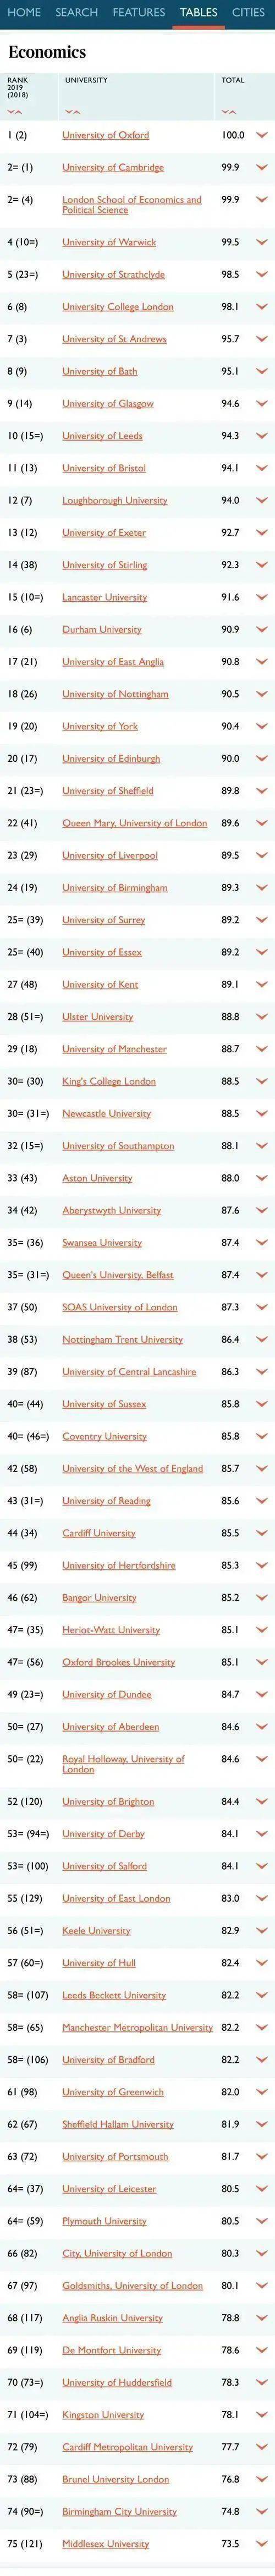 2020英国times大学排名_THE发布2020世界大学声誉排名!25所英国大学上榜